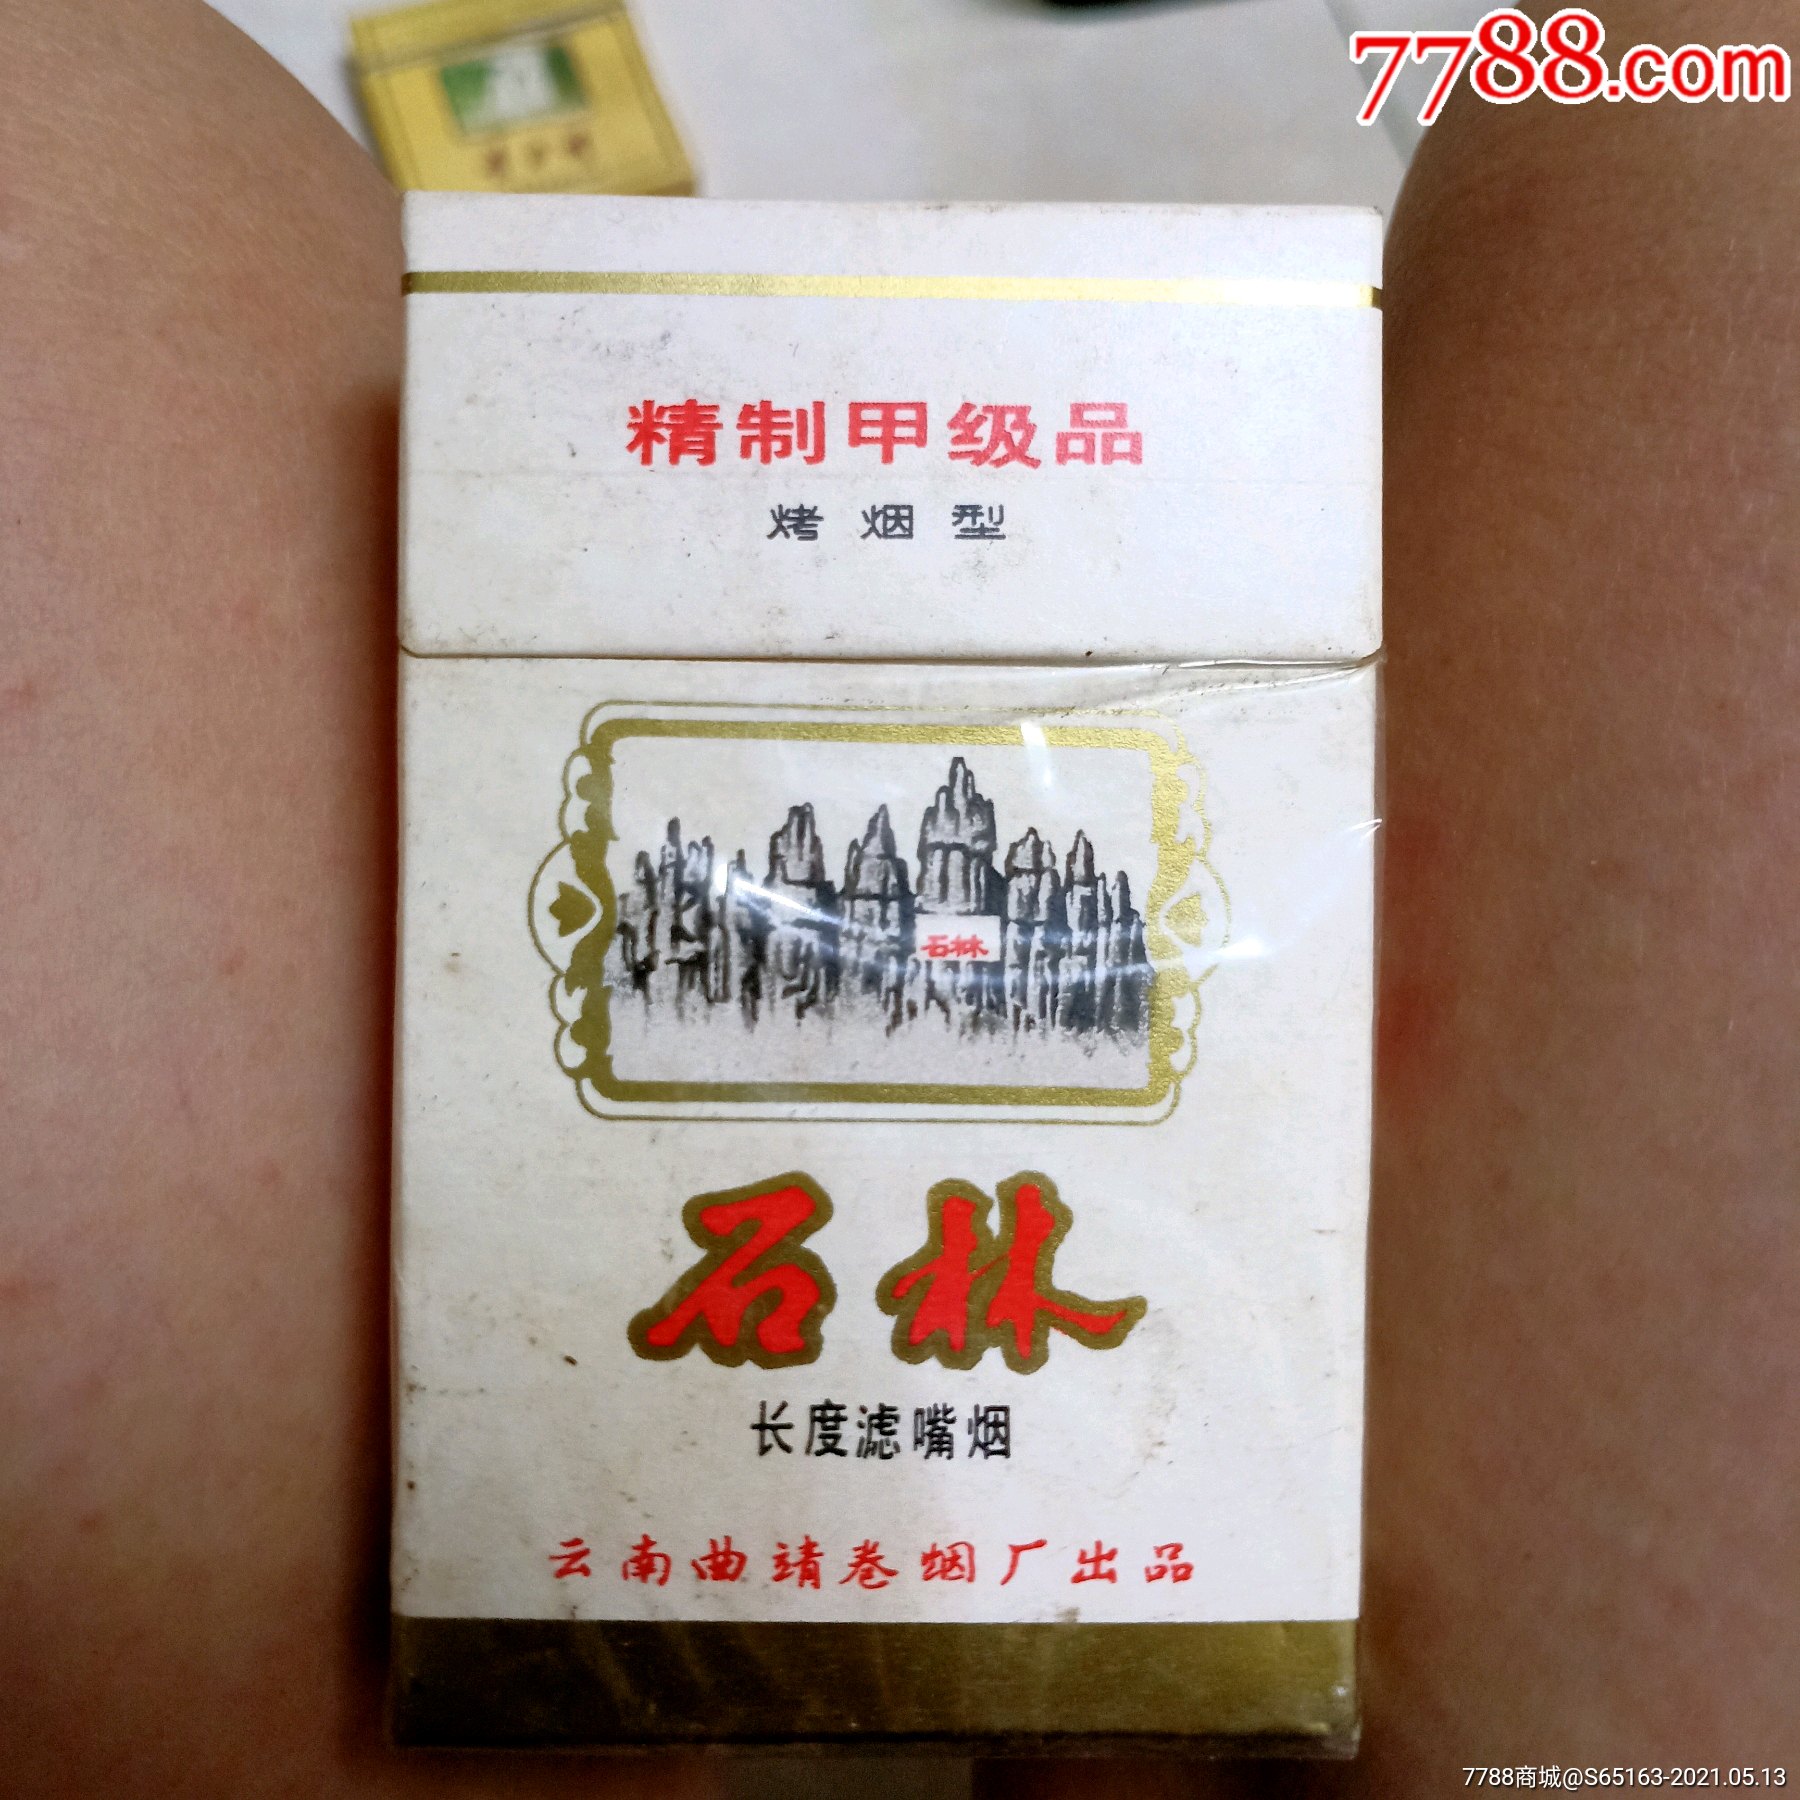 石林烟塑料盒图片